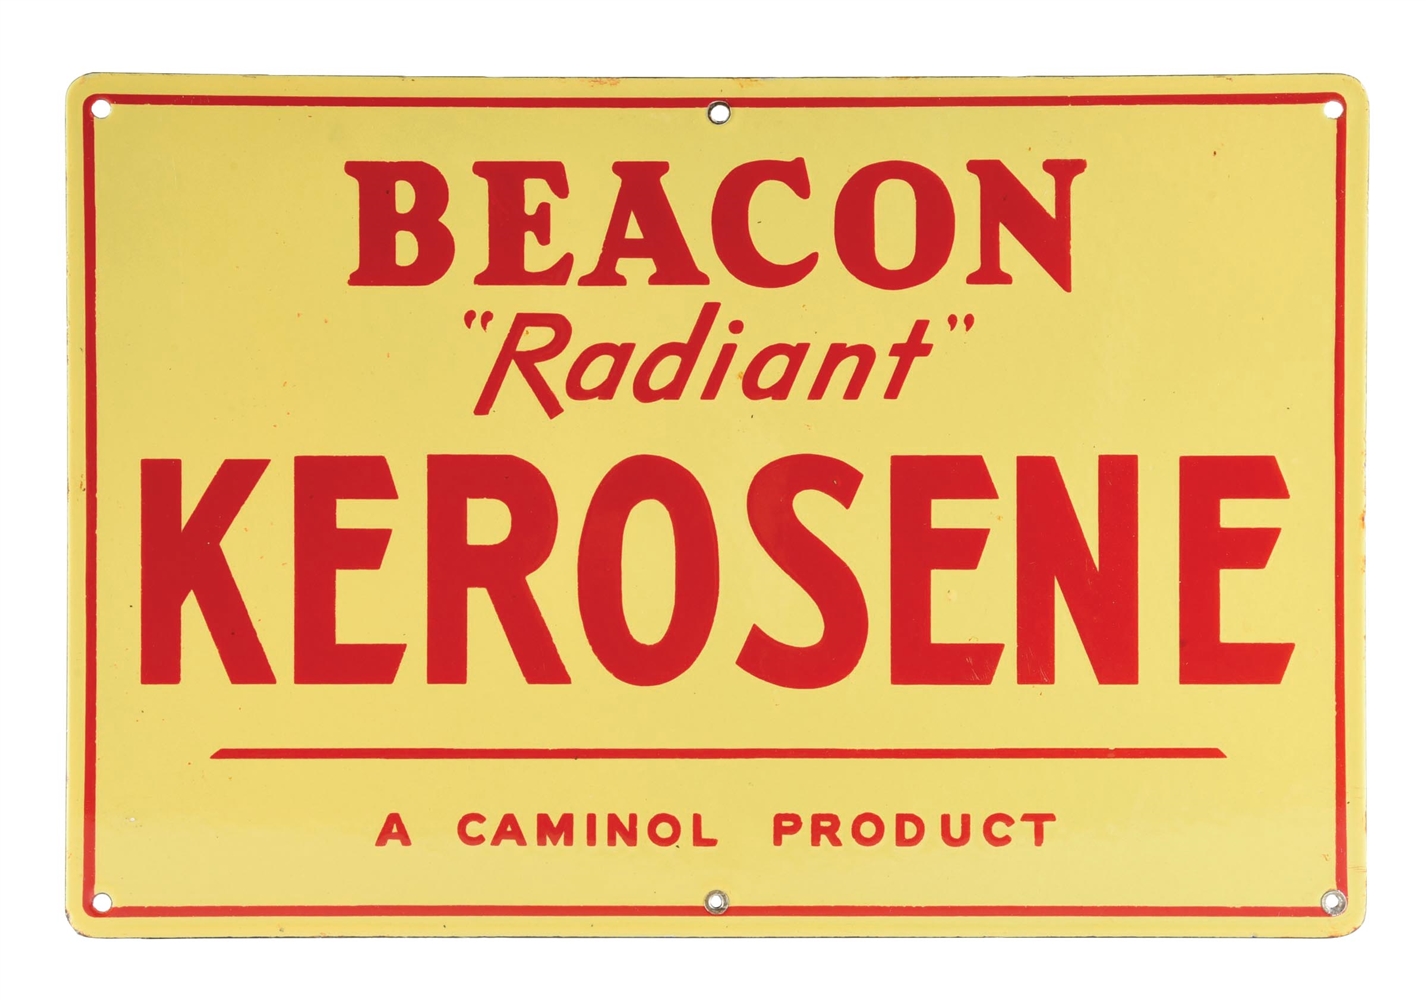 BEACON "RADIANT" KEROSENE PORCELAIN SERVICE STATION SIGN AGS 94. 